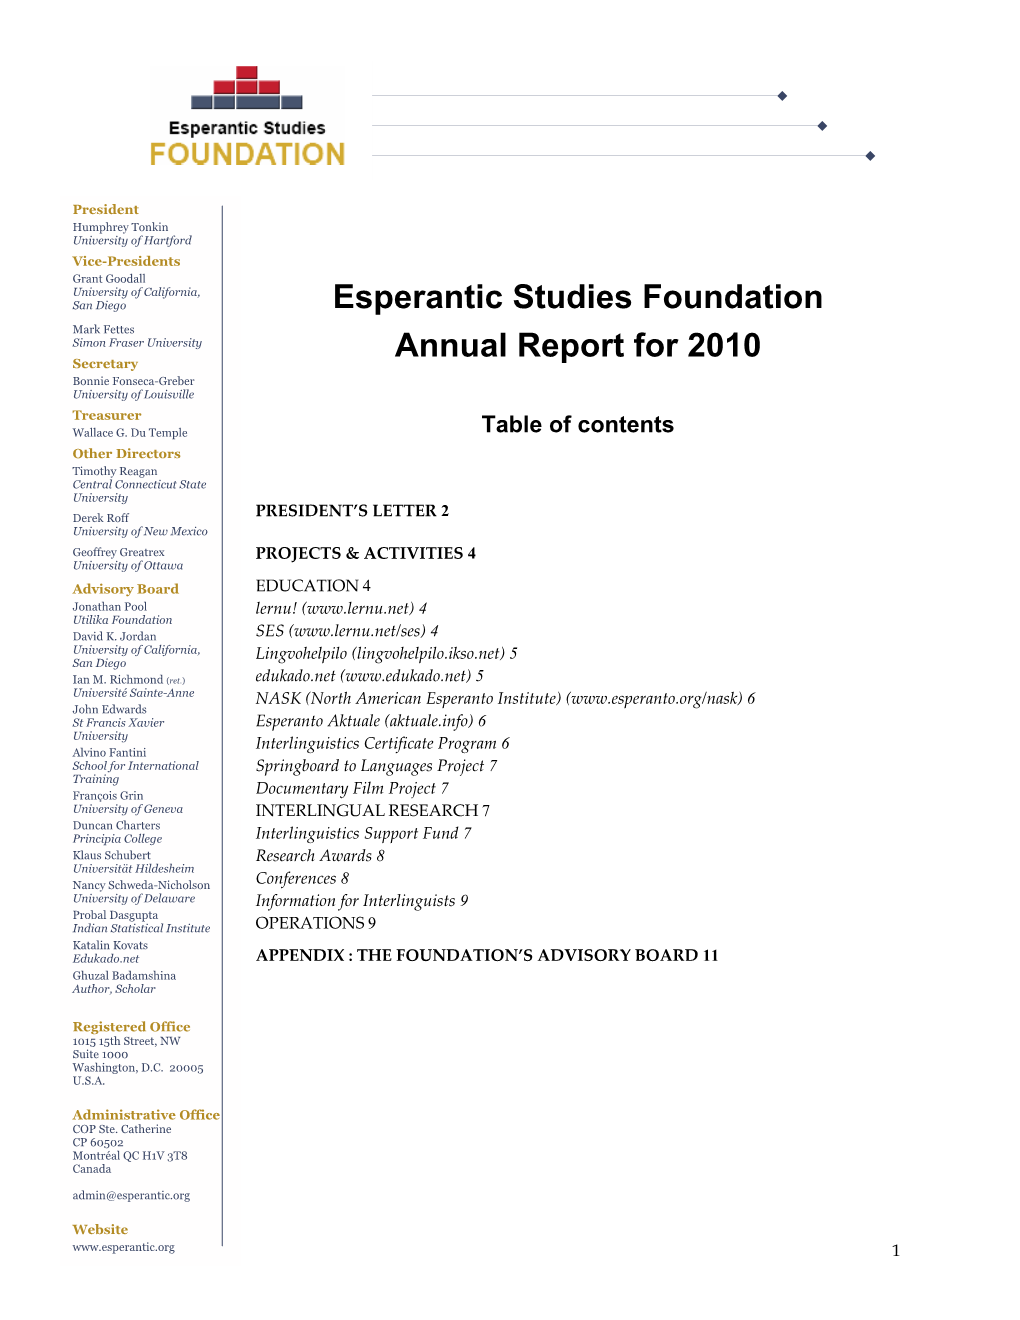 Esperantic Studies Foundation Annual Report for 2010